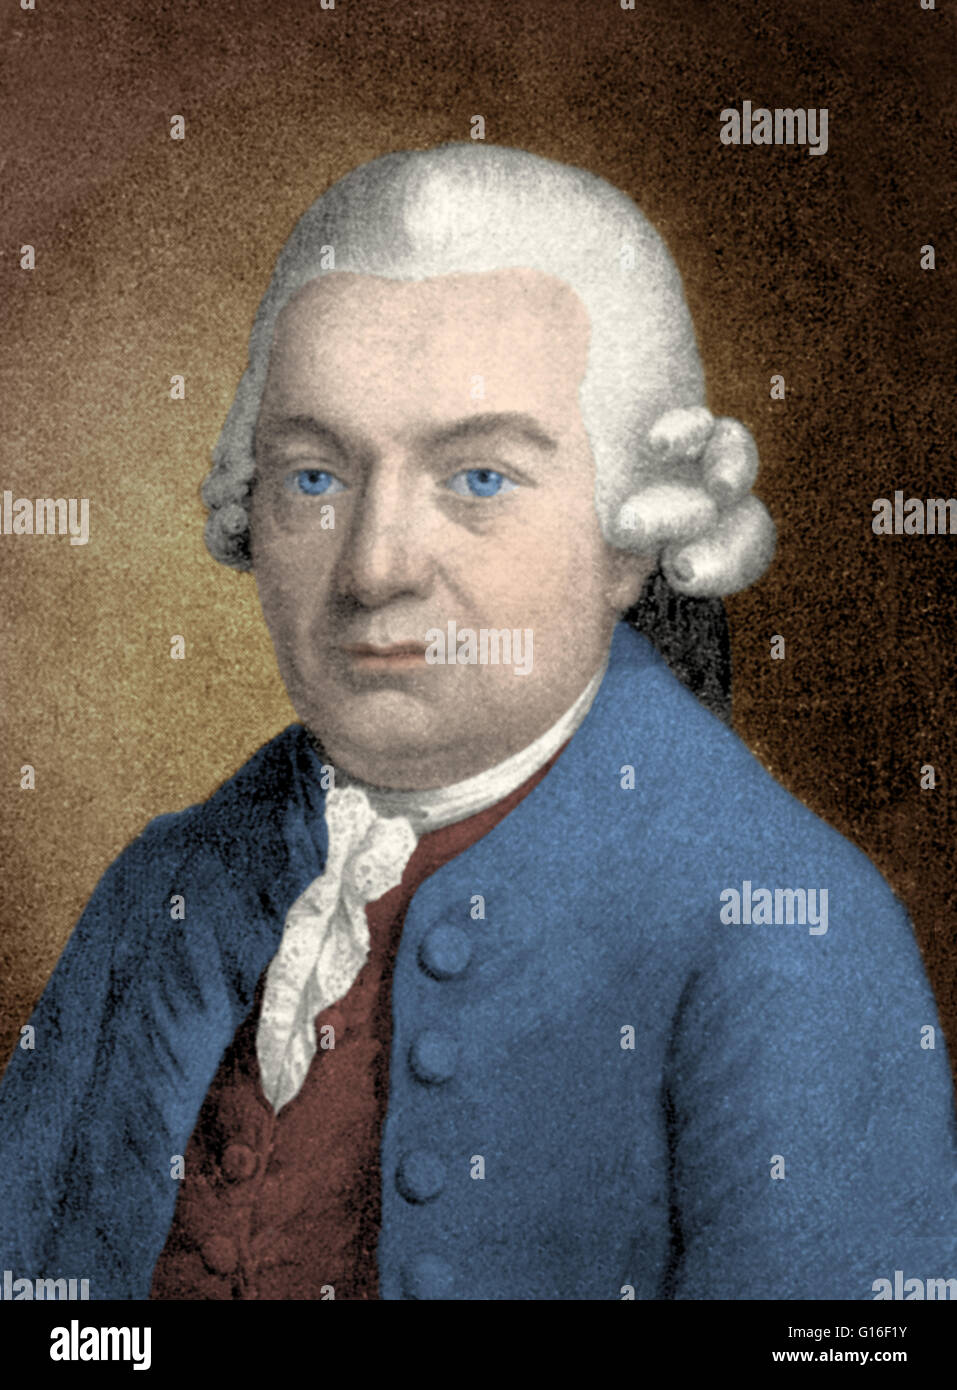 Carl <b>Philipp Emanuel Bach</b> (March 8, 1714 - December 14, 1788) was a German ... - carl-philipp-emanuel-bach-march-8-1714-december-14-1788-was-a-german-G16F1Y